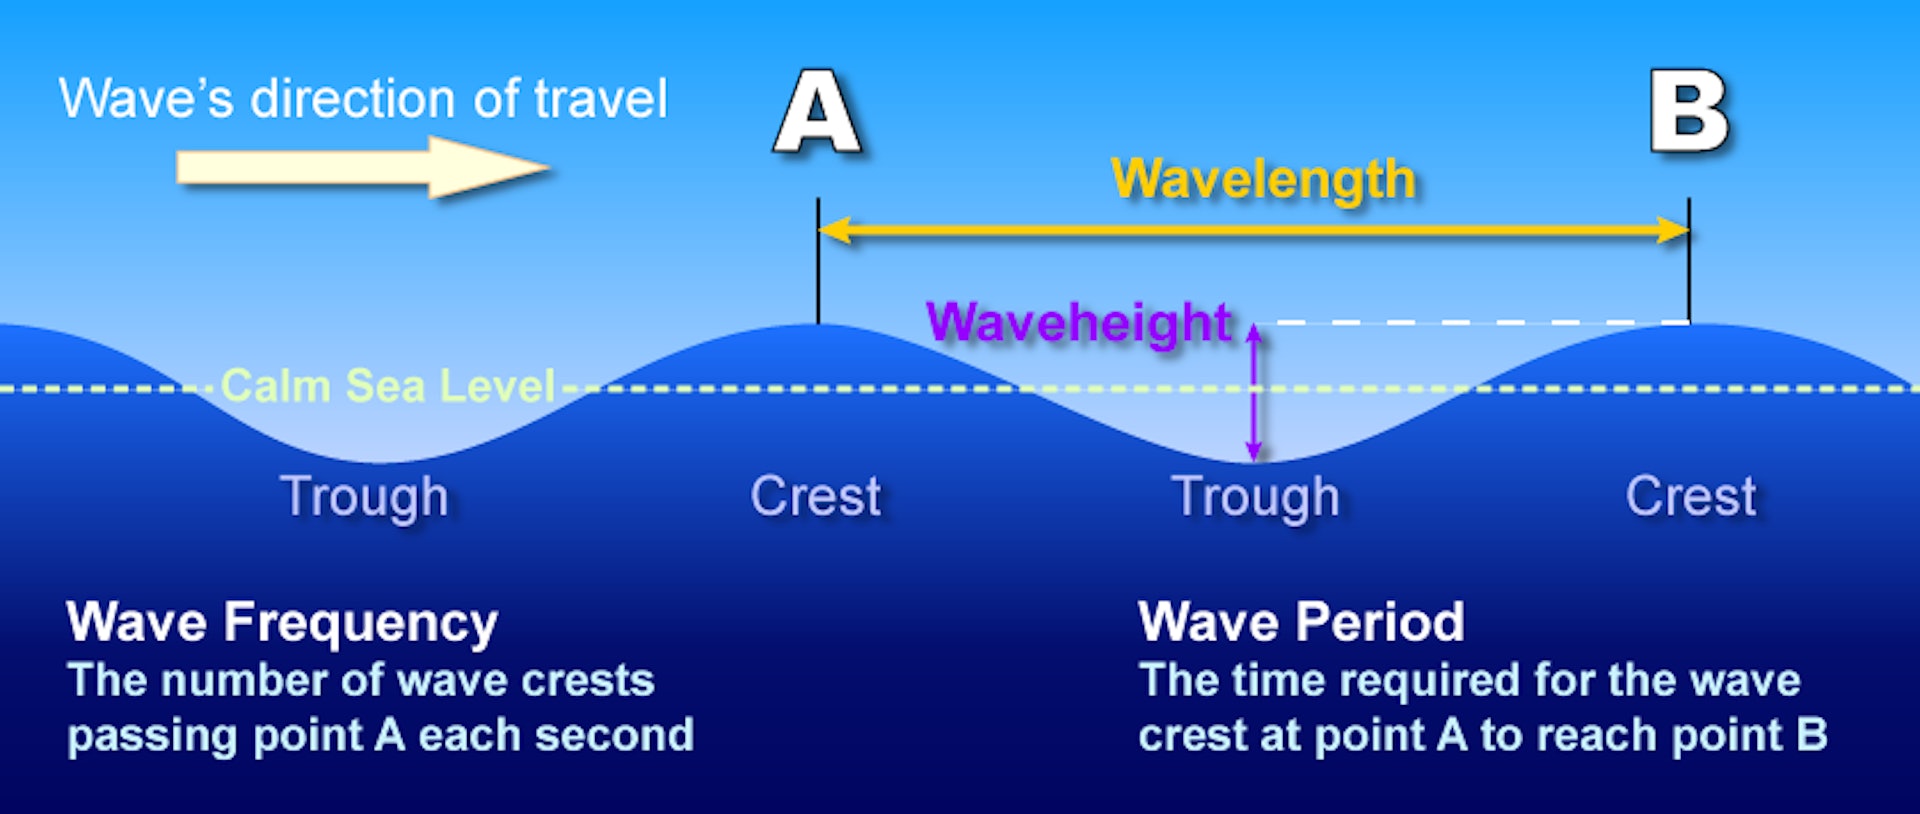 Волны-убийцы: новая технология запечатлела этот неуловимый и причудливый феномен в океанских волнах